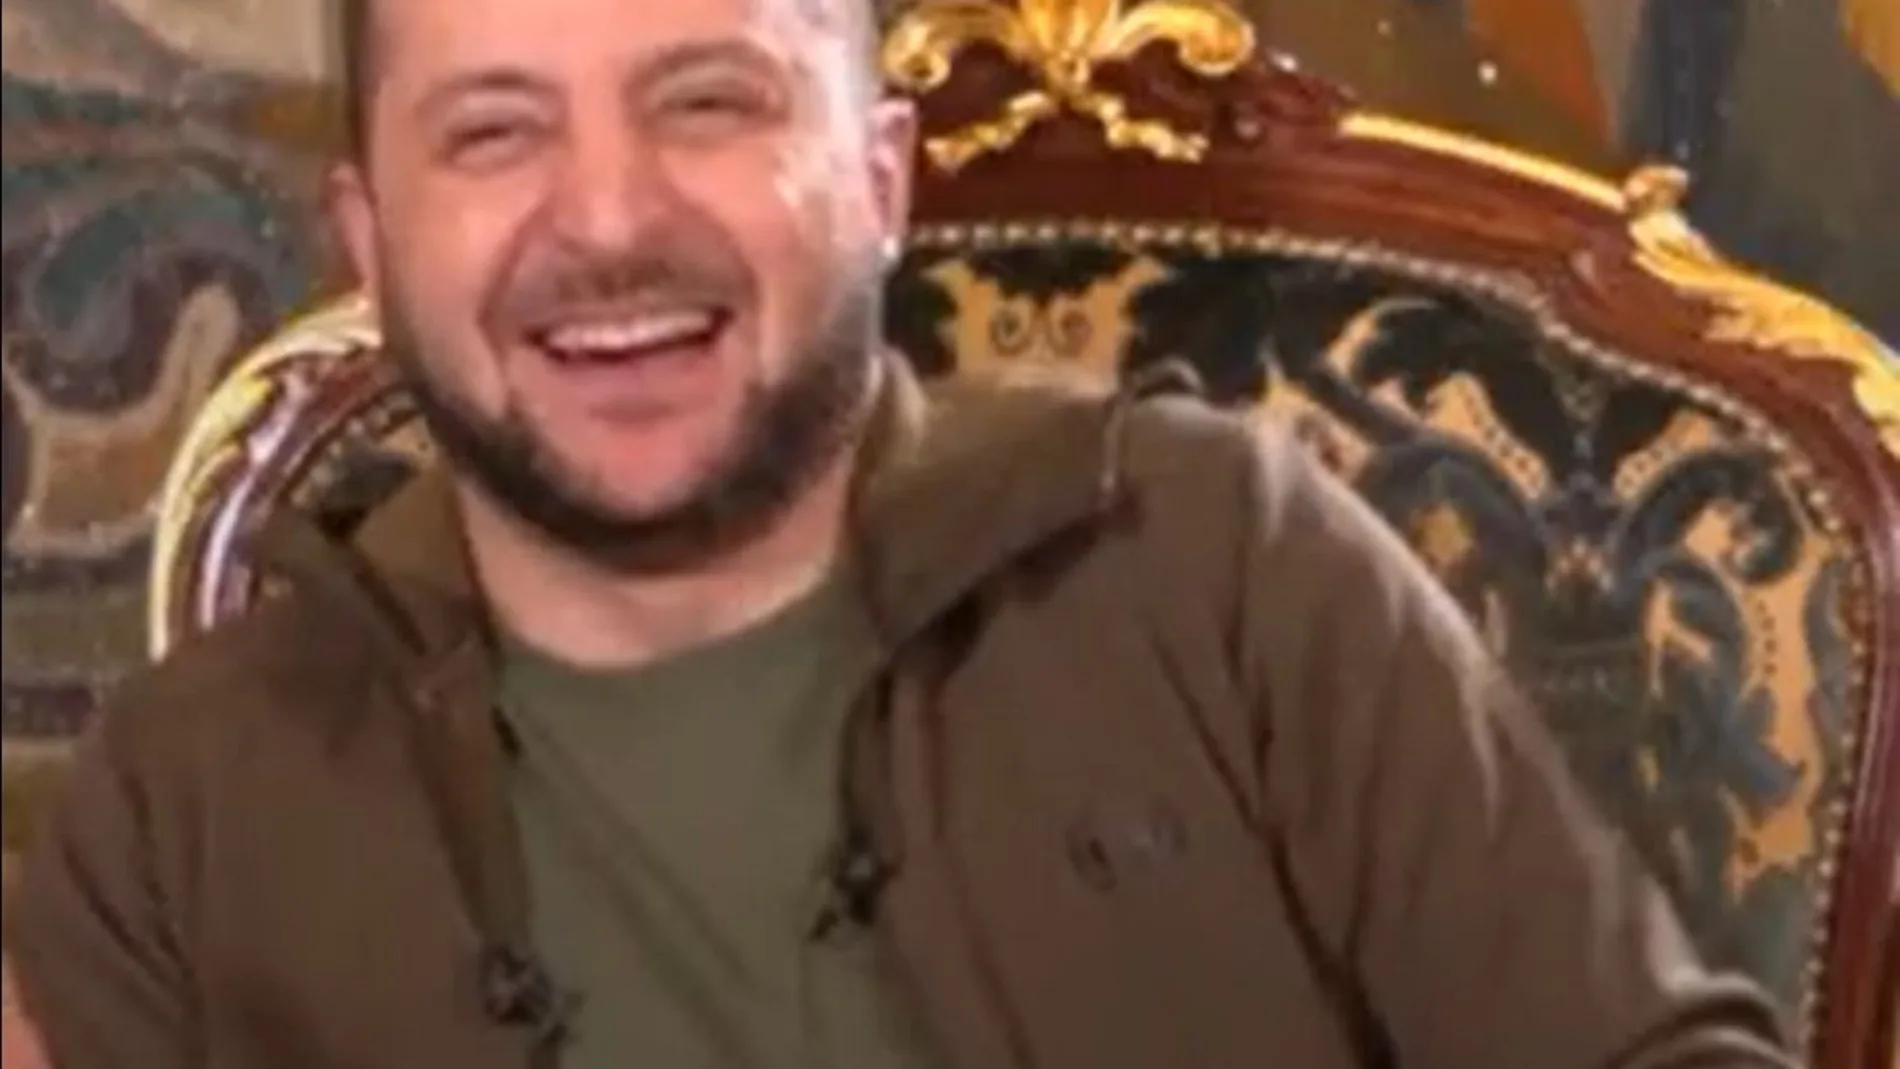 Captura del instante en que Zelenski ríe tras la respuesta final que le dio a la periodista